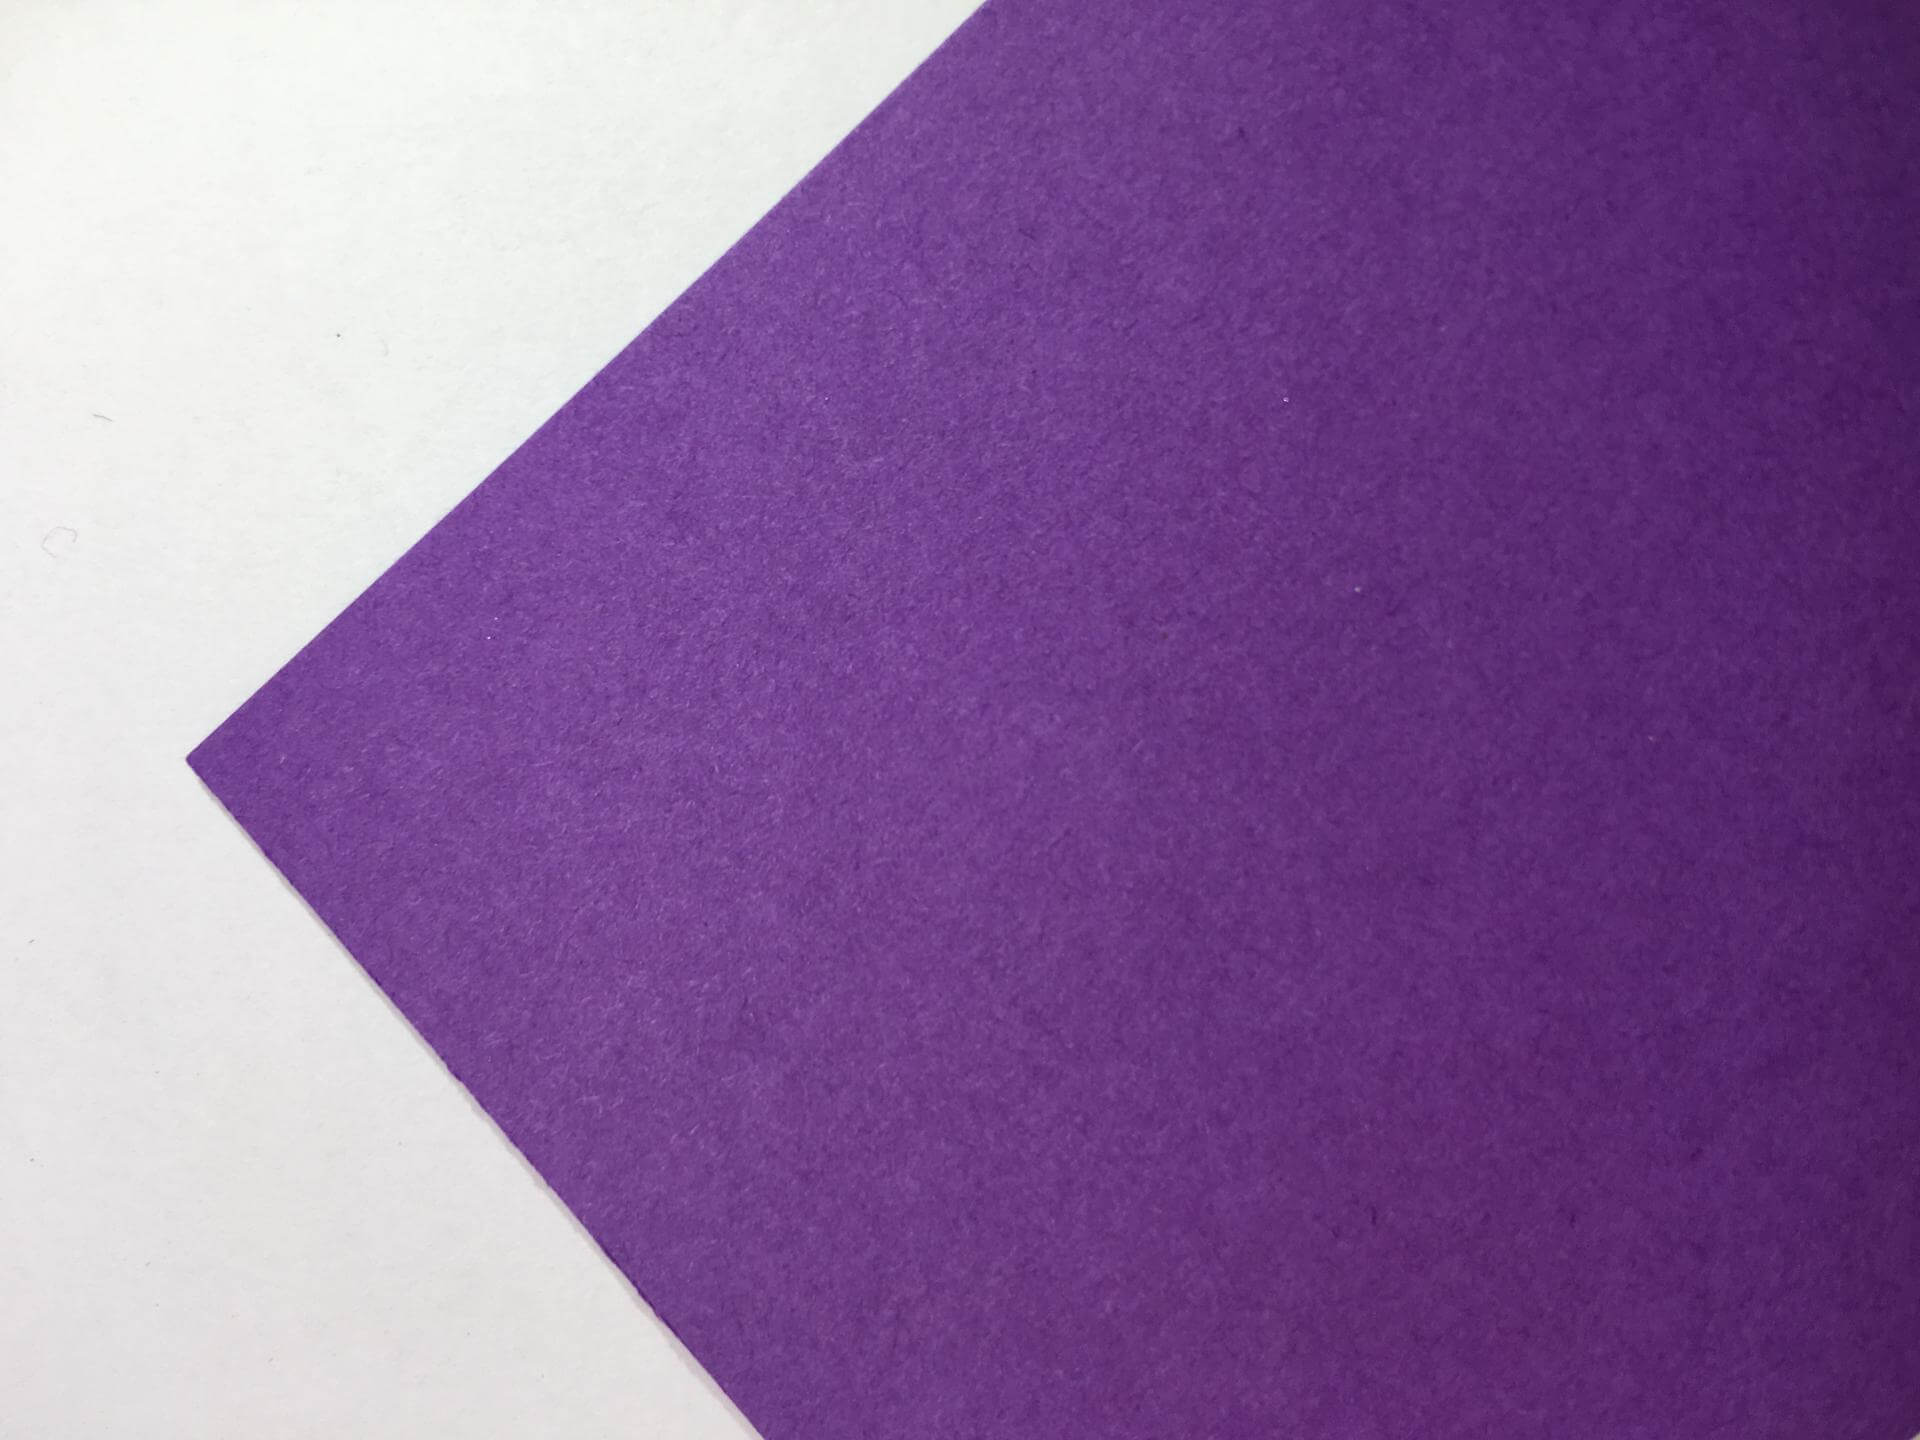 Malmero violette